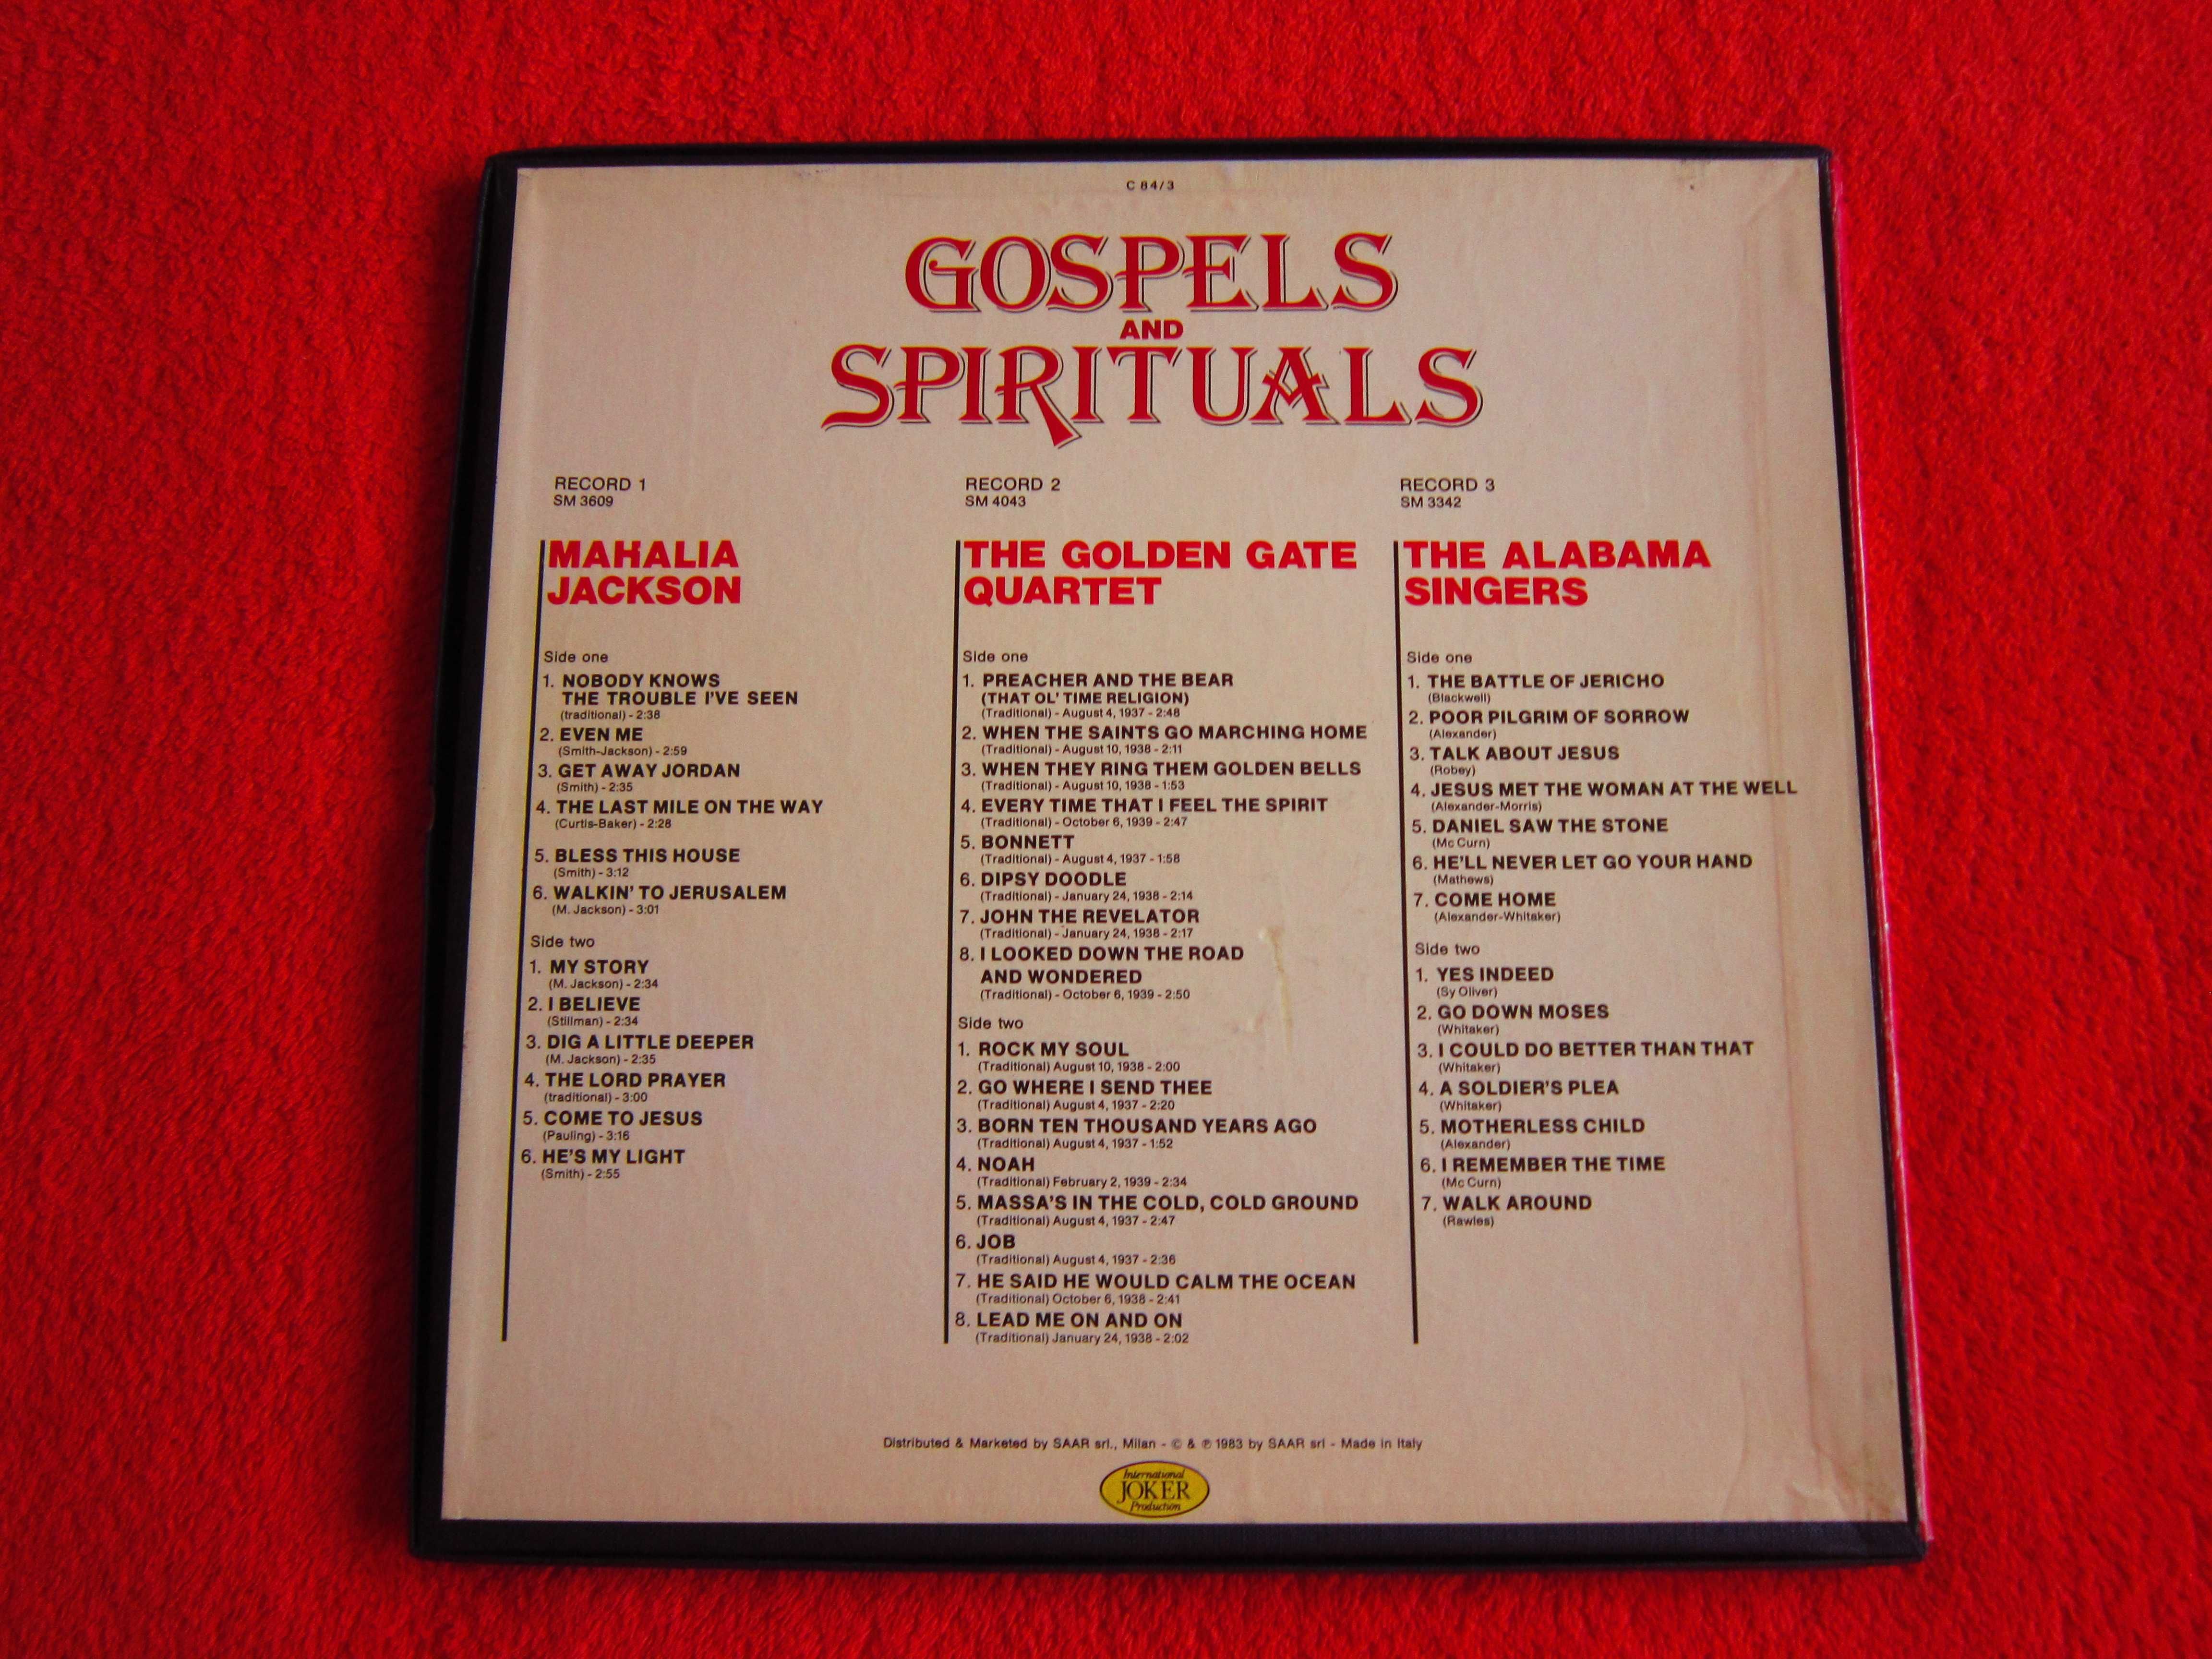 cadou rar 3LP Gospels &Spirituals- Mahalia Jackson,Golden Gate Quartet